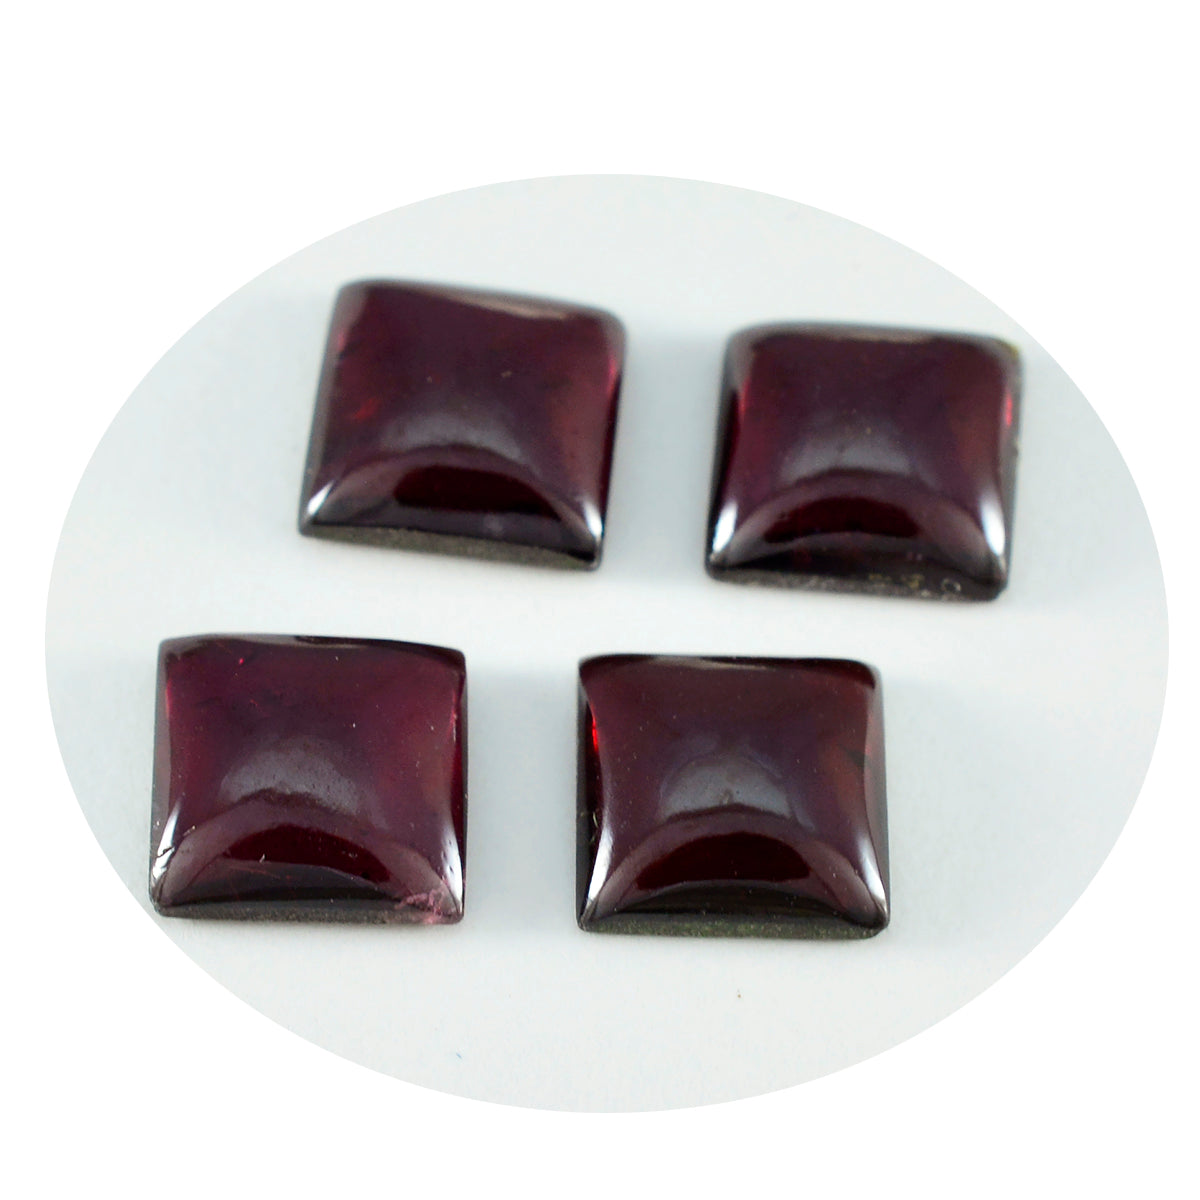 Riyogems 1 Stück roter Granat-Cabochon, 12 x 12 mm, quadratische Form, hochwertiger Edelstein